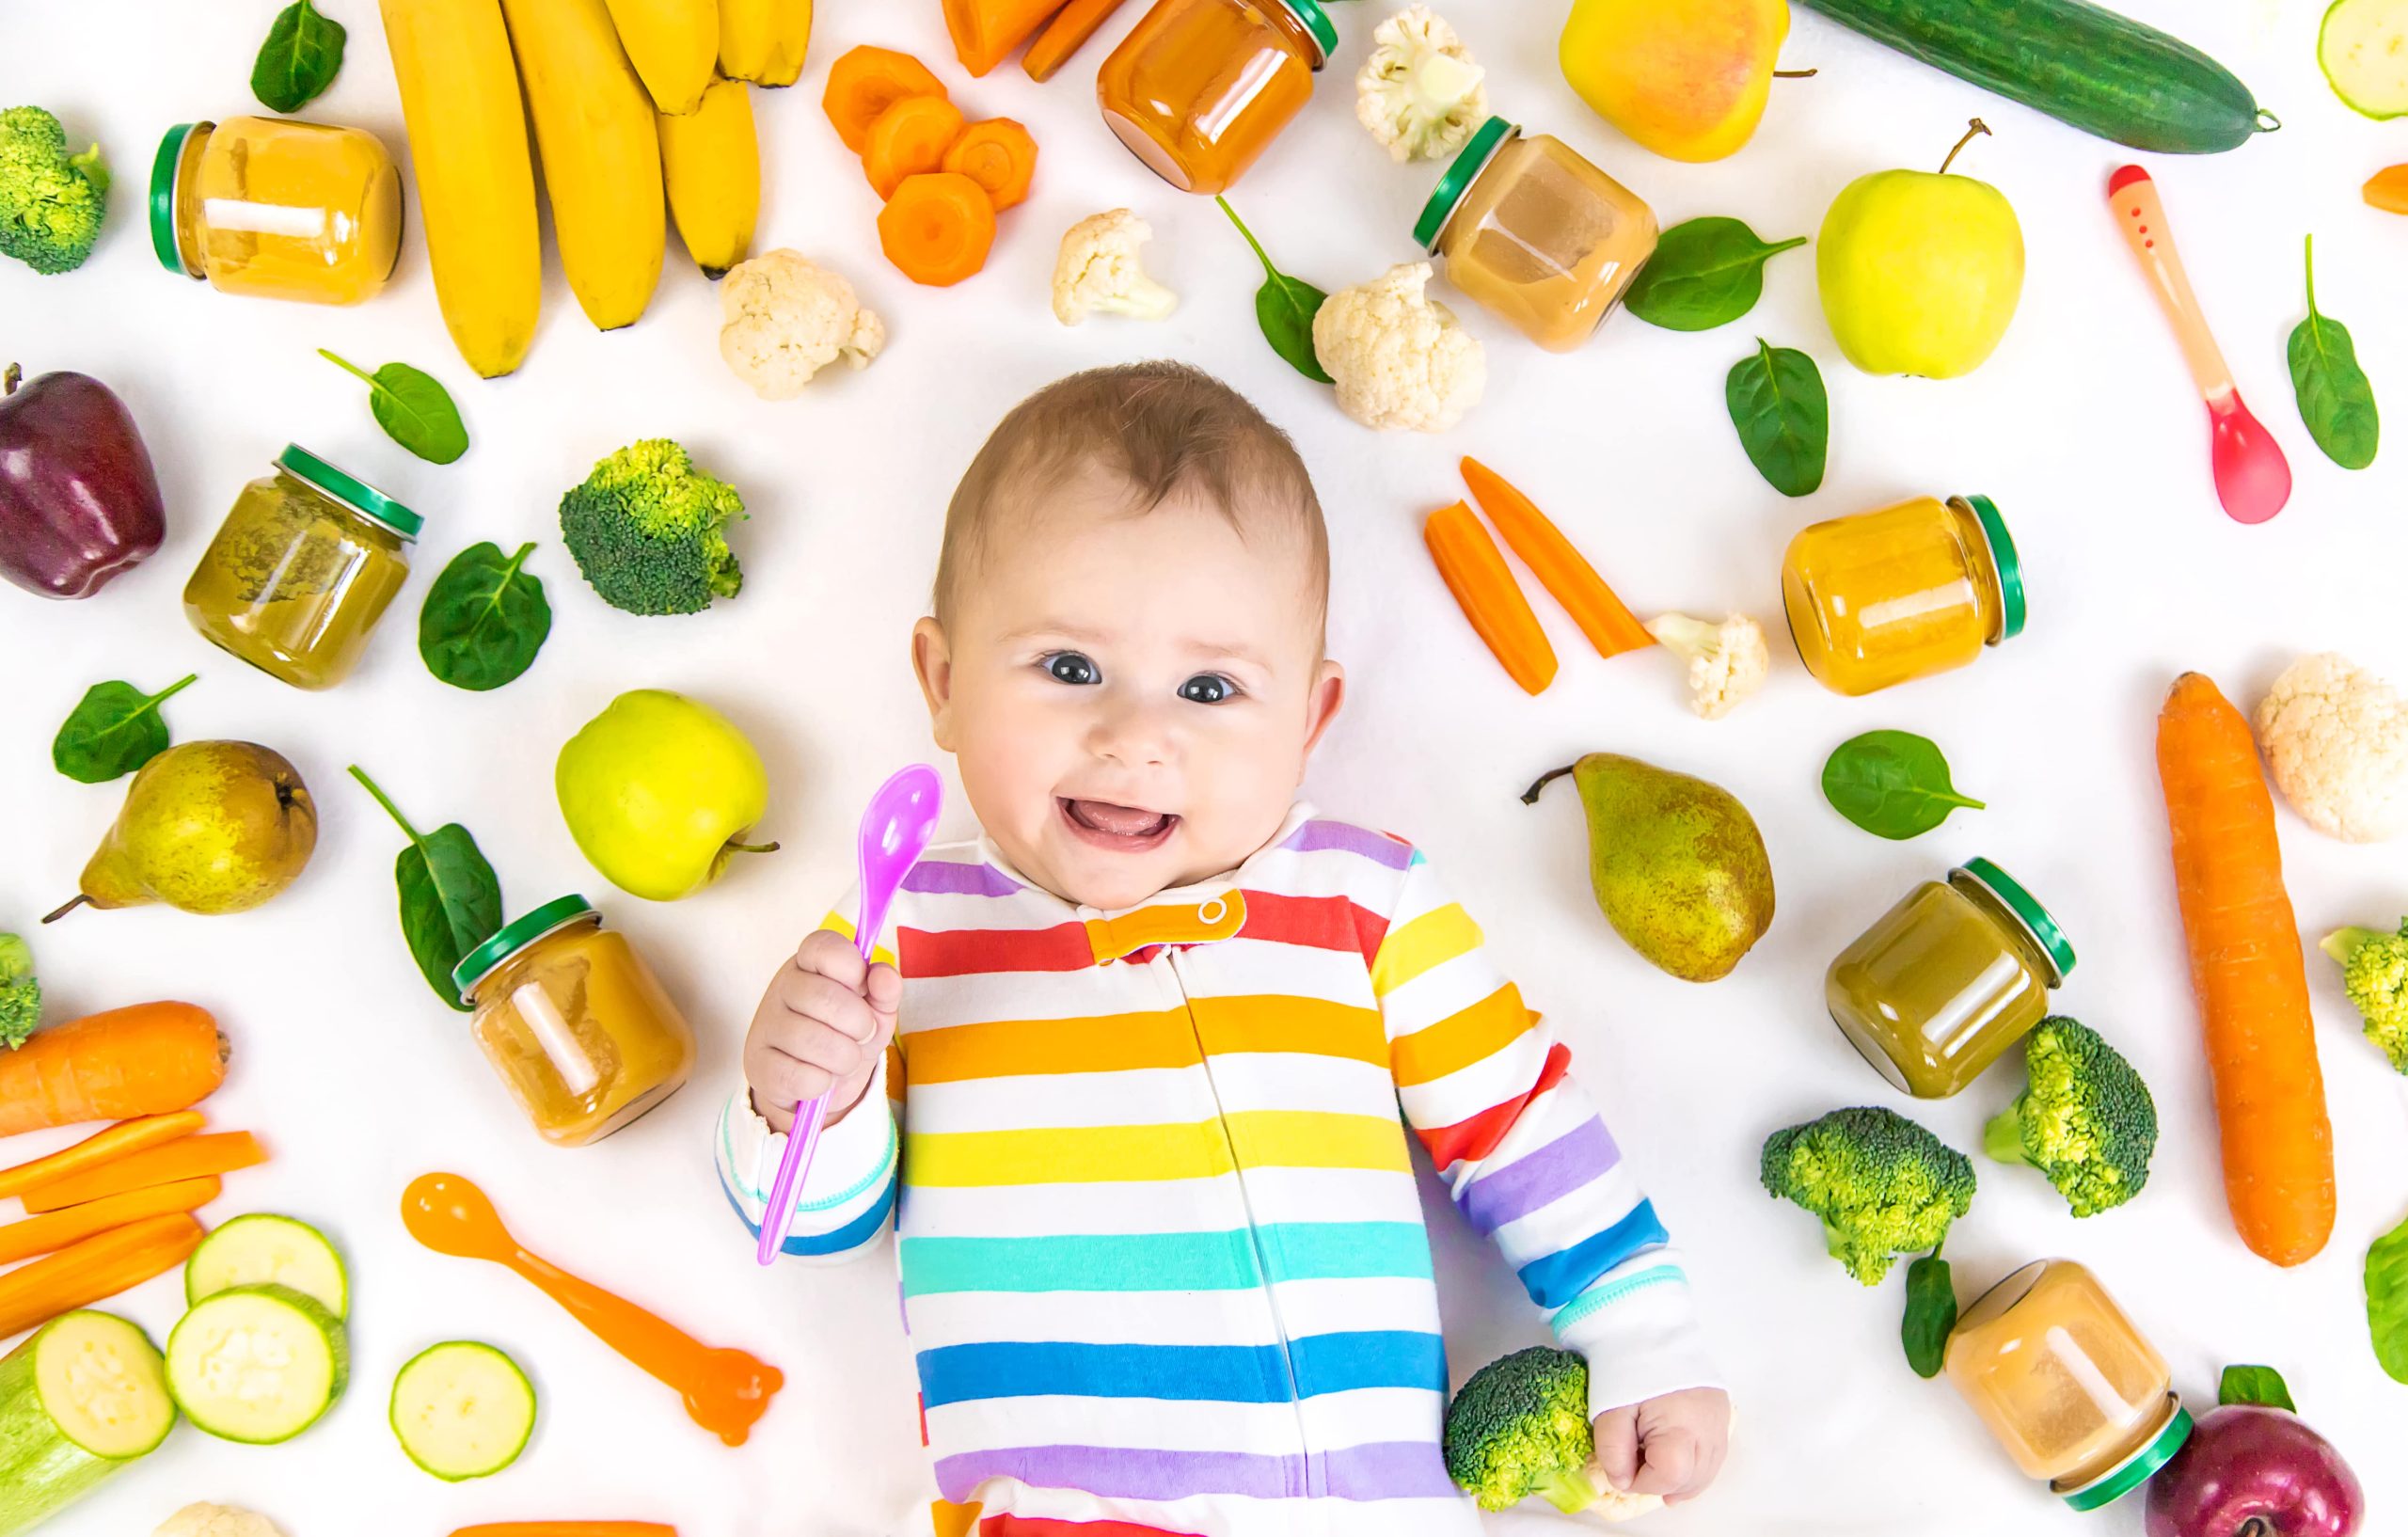 La diversification alimentaire chez l'enfant